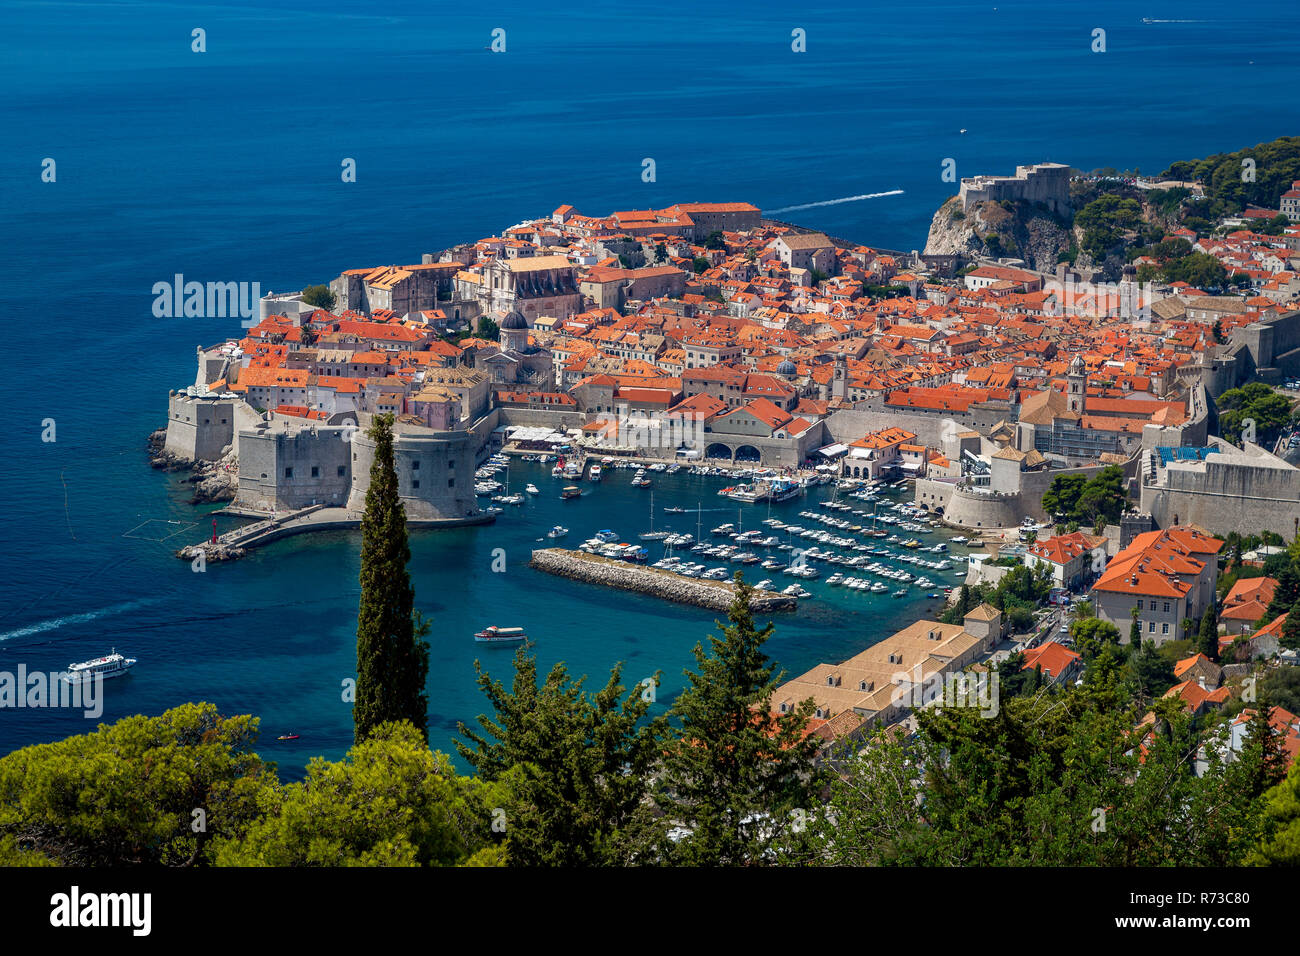 Dubrovnik Città vecchia cinta muraria della città guardando da sopra , immagine di viaggio mentre è in vacanza a piedi le mura della città per vedere la bellezza della città vecchia. Foto Stock